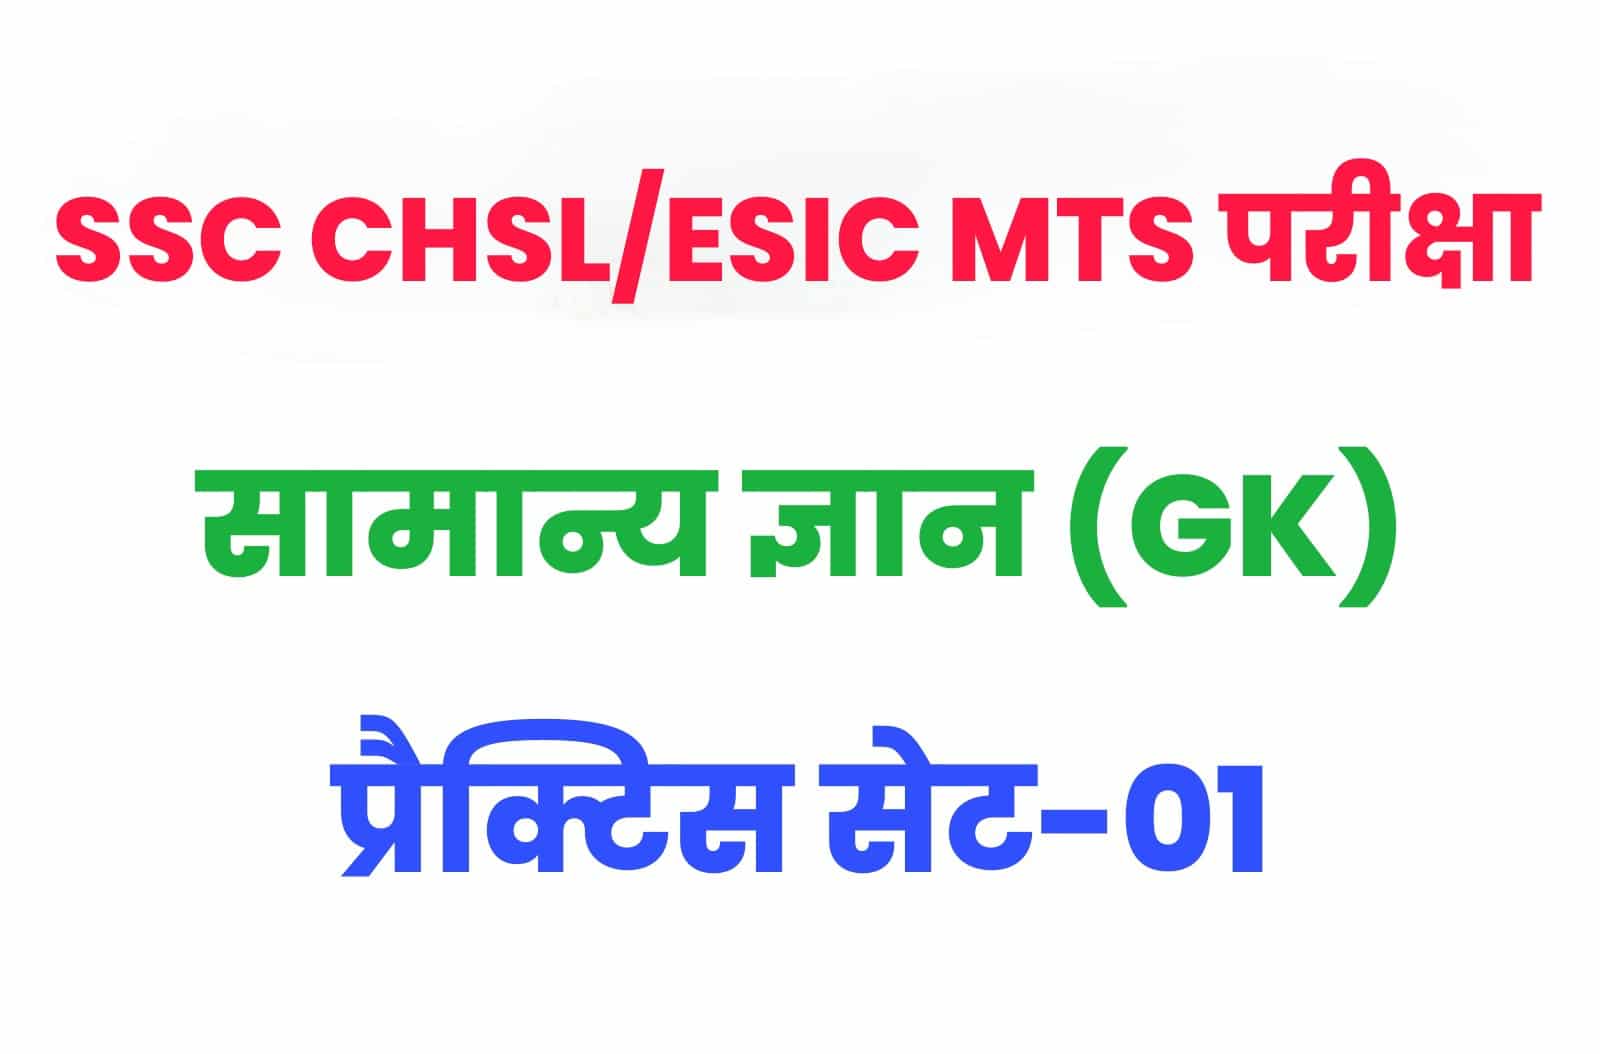 SSC CHSL/ESIC MTS GK/GS प्रैक्टिस सेट 01 : सामान्य ज्ञान के 25 महत्वपूर्ण प्रश्न